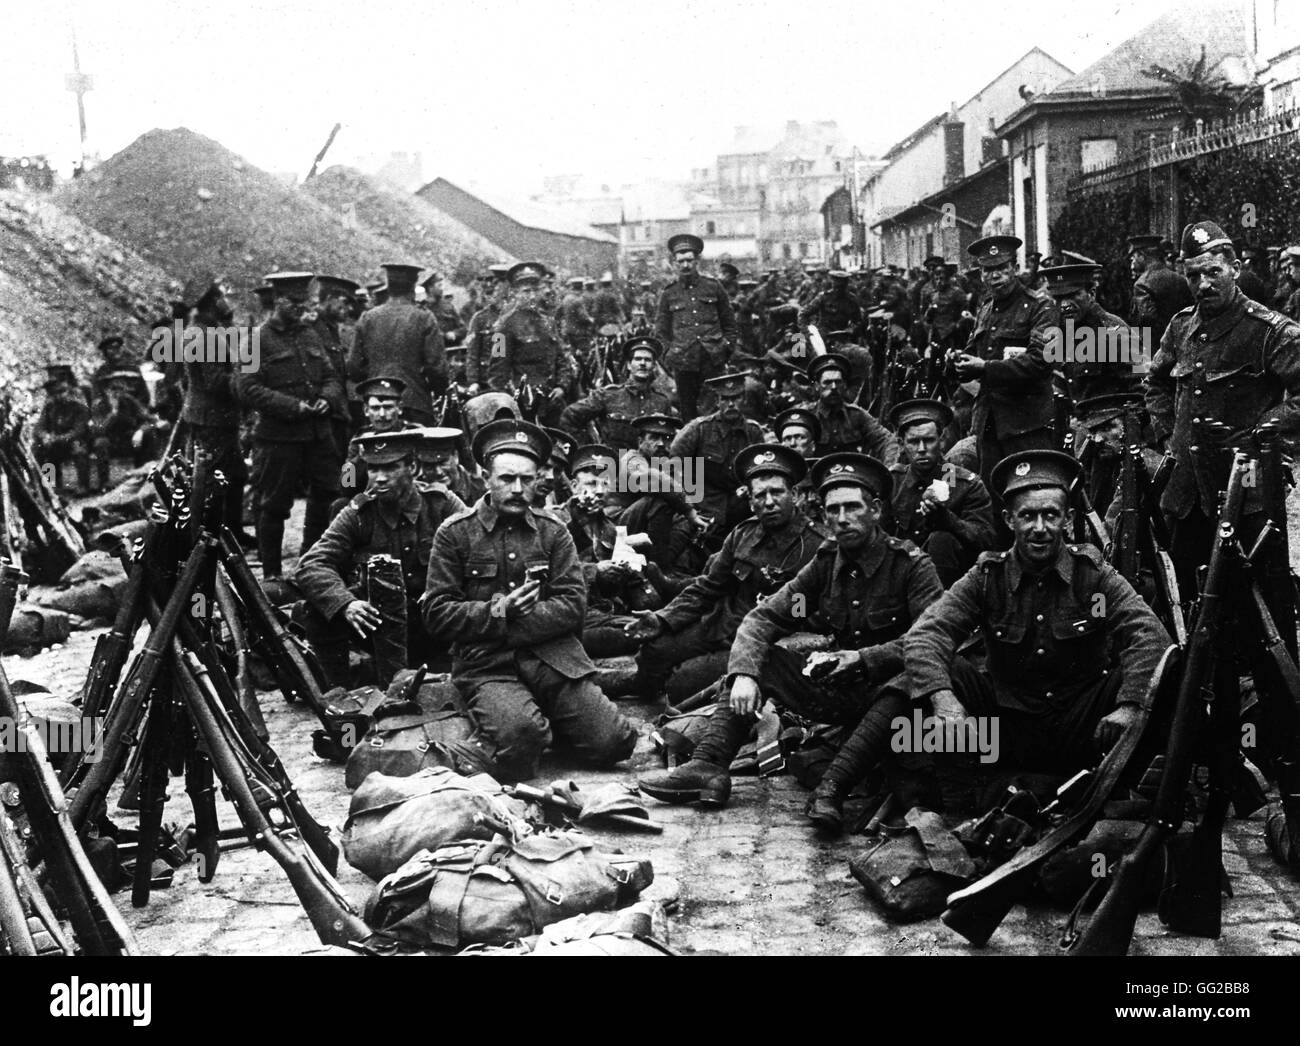 Les troupes britanniques ayant une pause dans un village français 1917 France, la Première Guerre mondiale, l'Imperial War Museum de Londres Banque D'Images